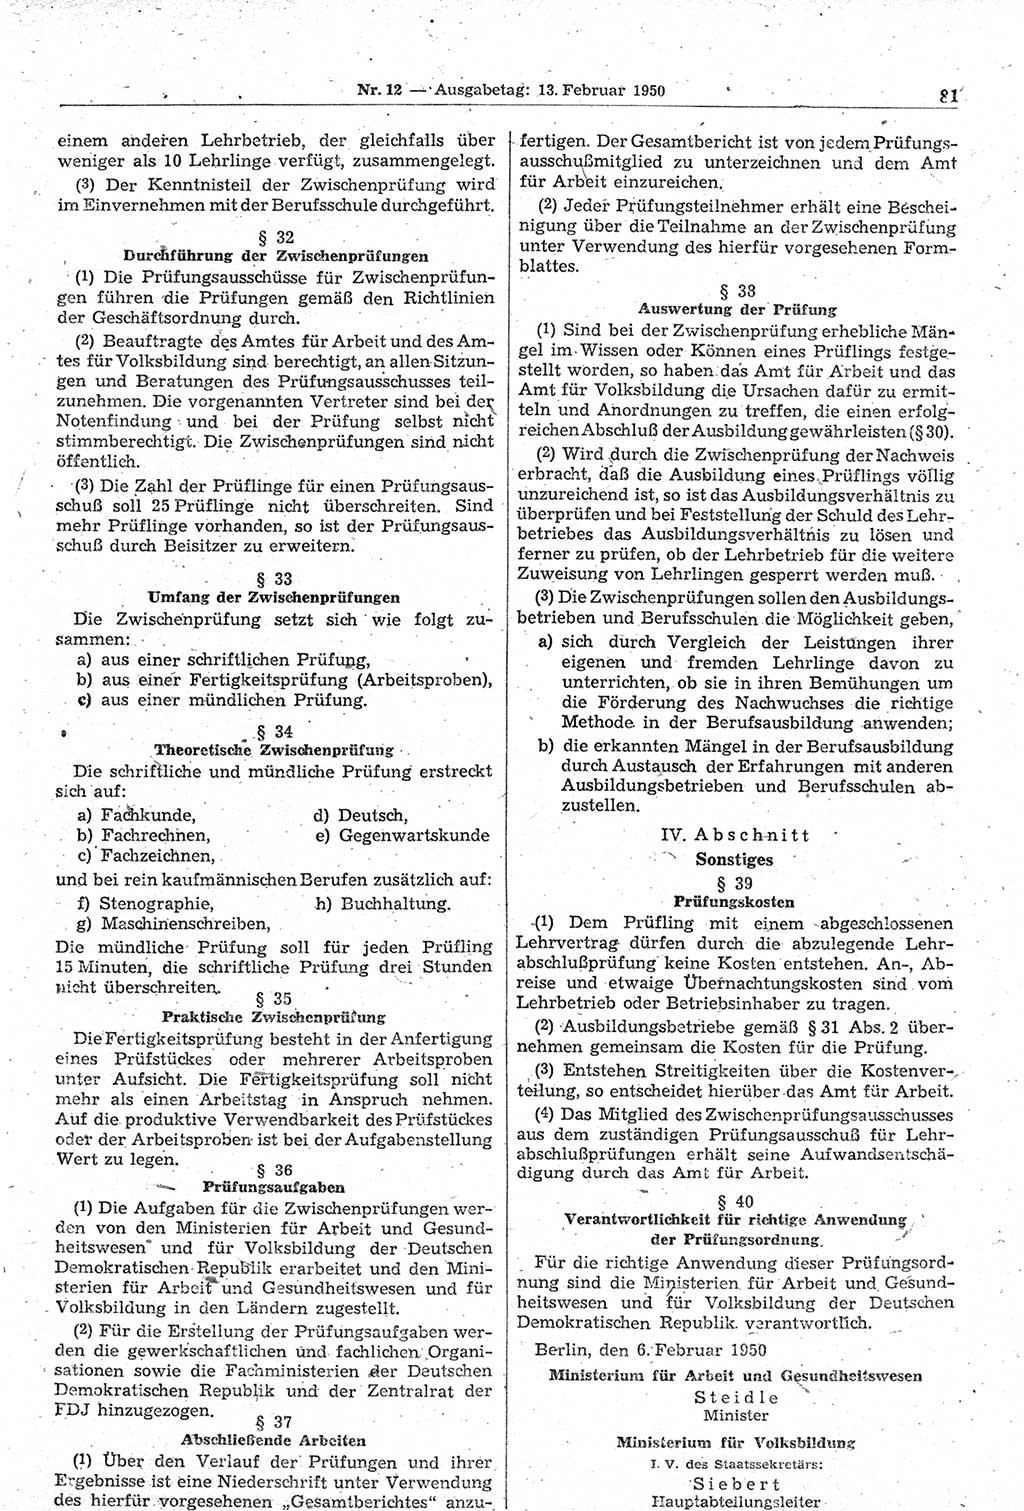 Gesetzblatt (GBl.) der Deutschen Demokratischen Republik (DDR) 1950, Seite 81 (GBl. DDR 1950, S. 81)